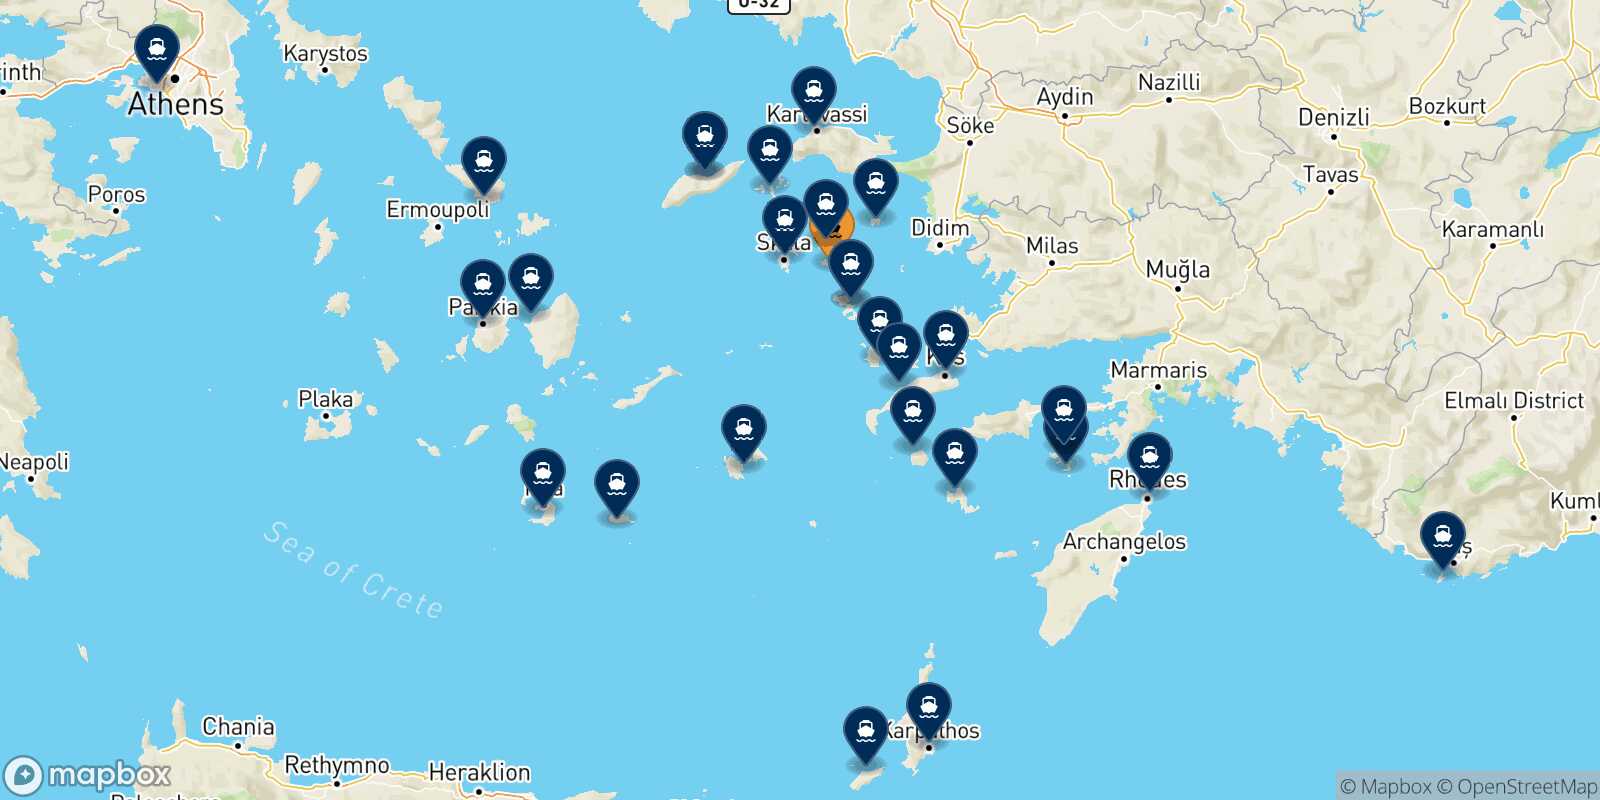 Mappa delle destinazioni raggiungibili da Lipsi